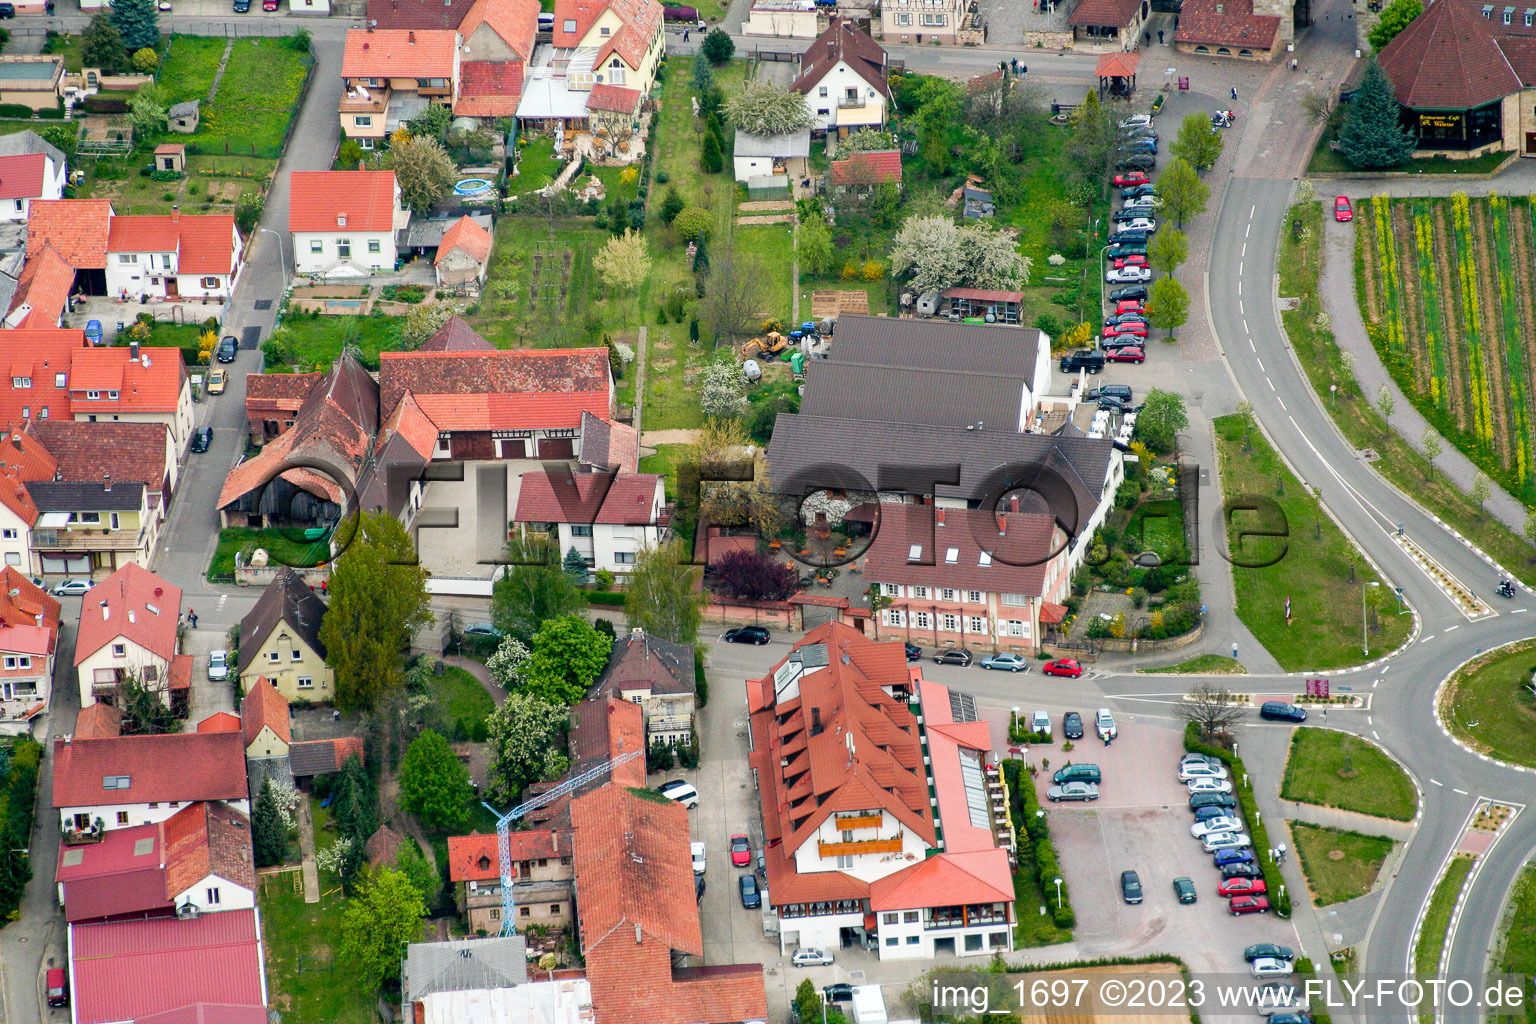 Vue aérienne de À la porte du vin à le quartier Schweigen in Schweigen-Rechtenbach dans le département Rhénanie-Palatinat, Allemagne